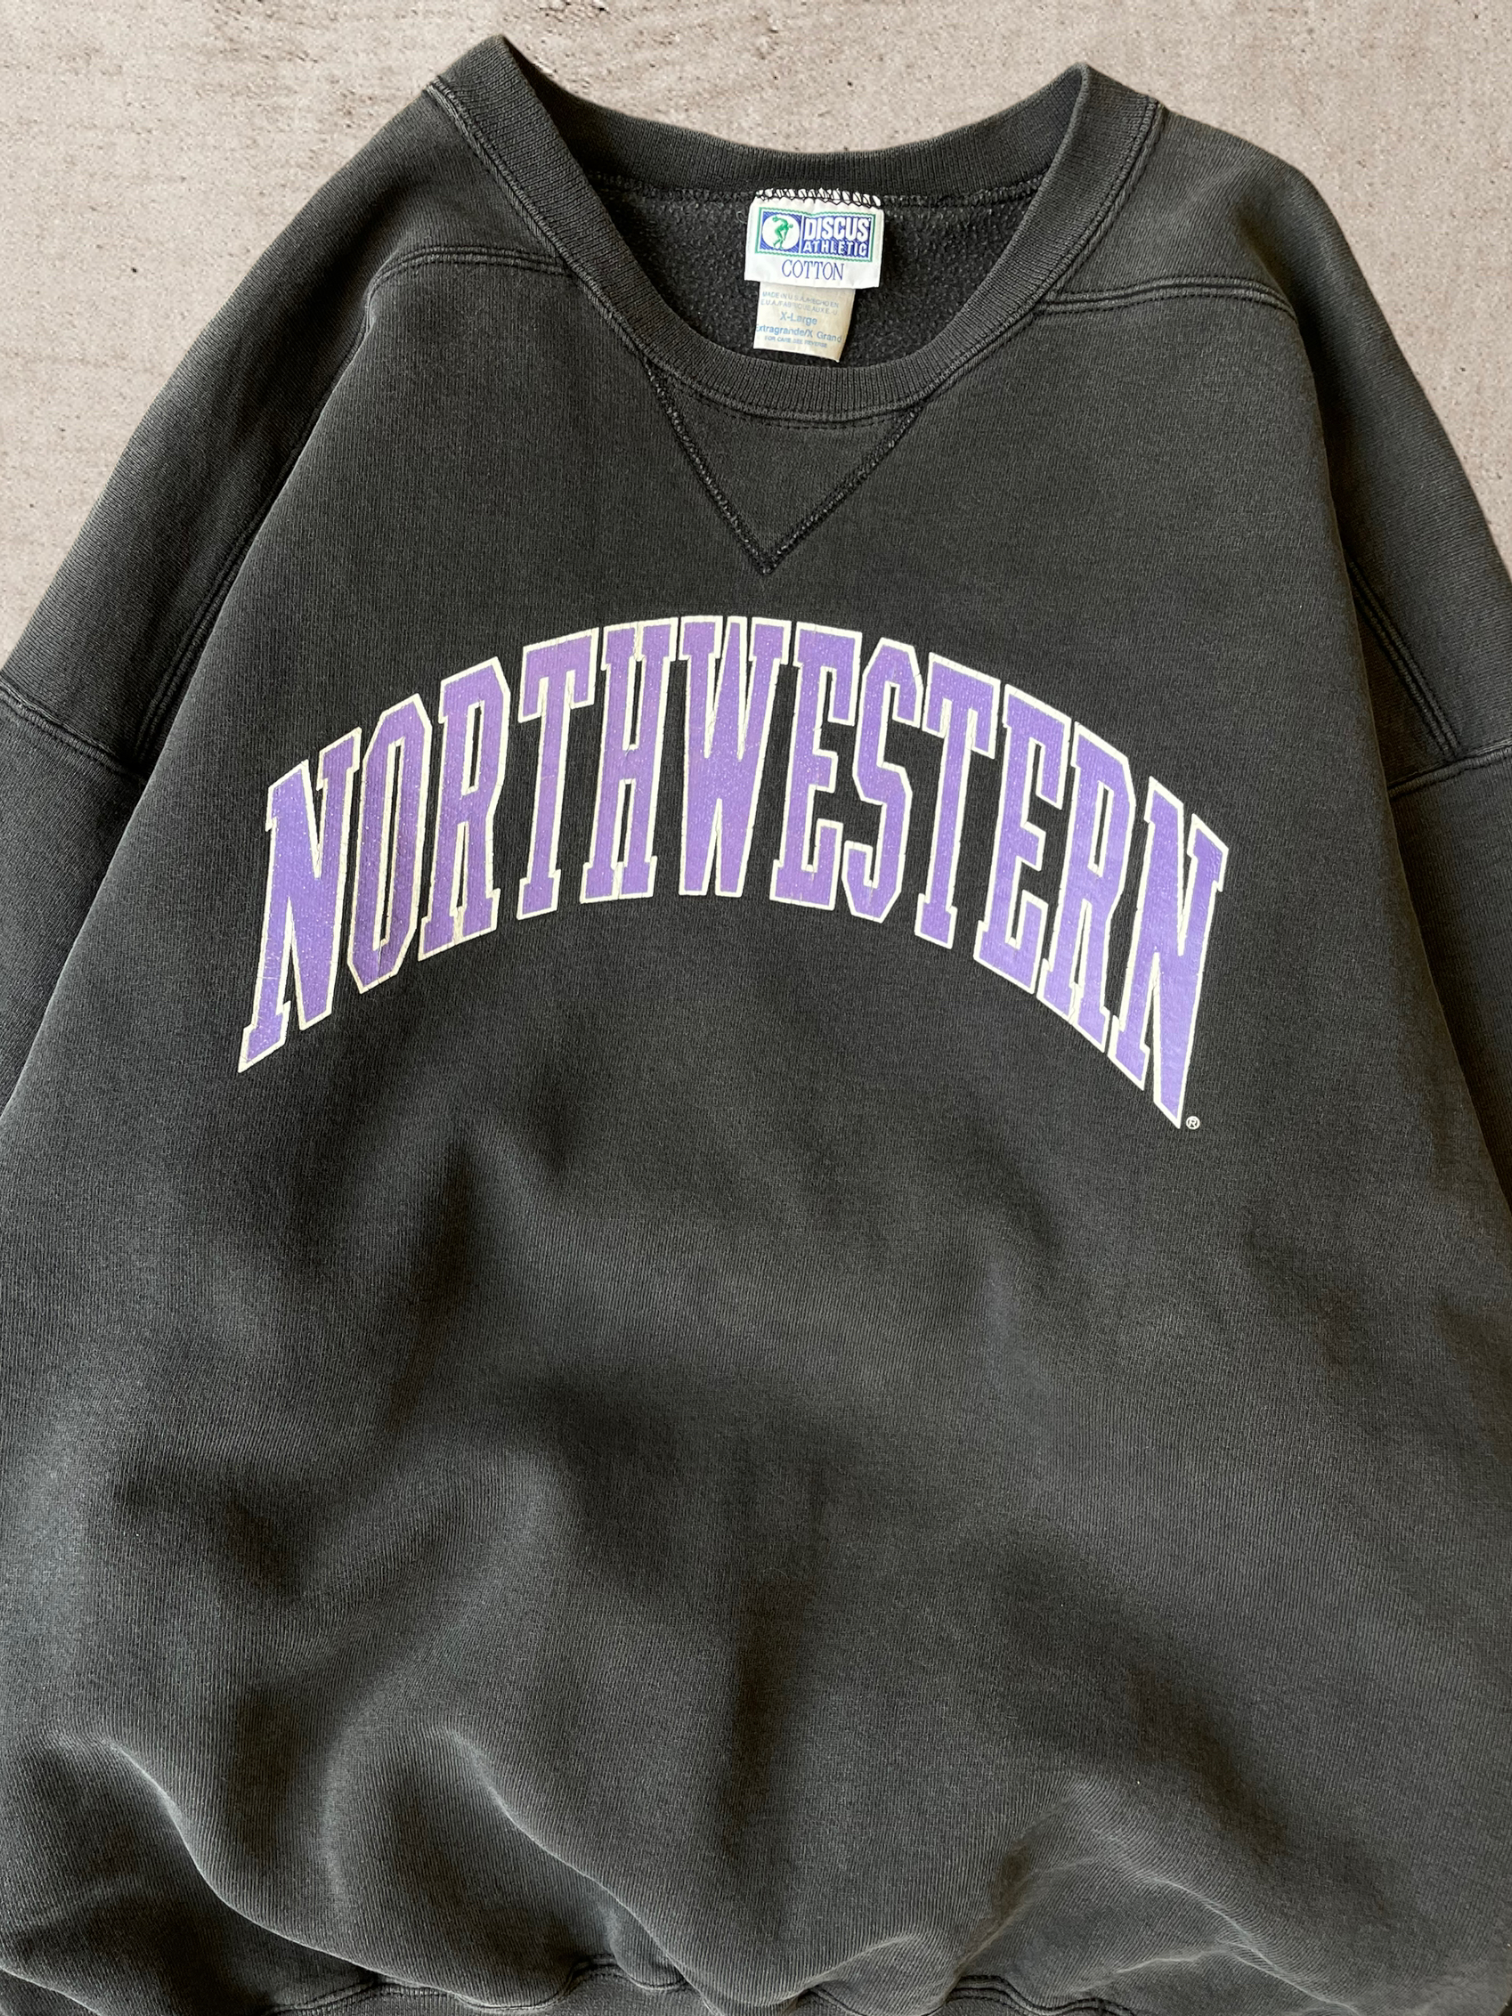 90s Northwestern University Crewneck - X-Large